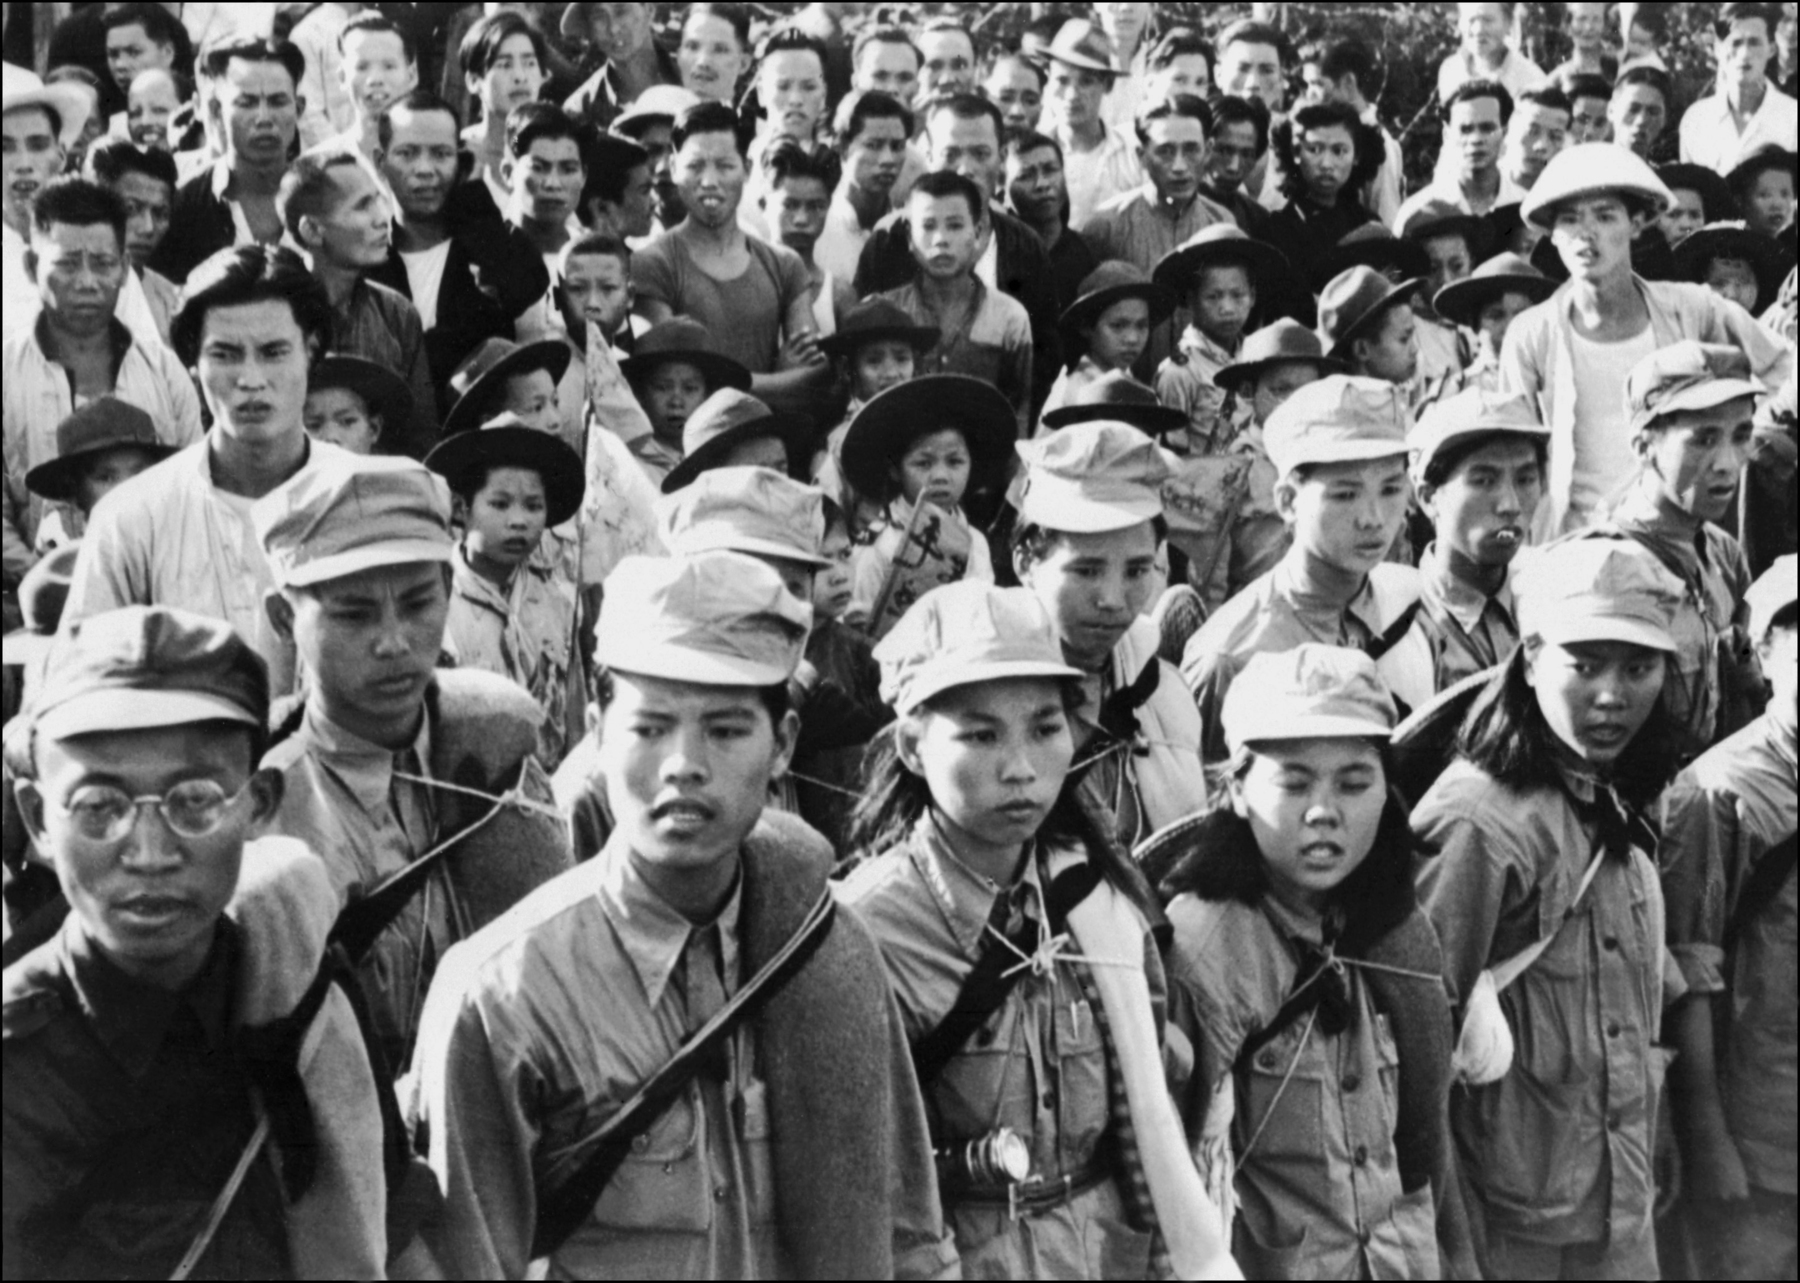 Fotografia em preto e branco. Vista para uma multidão. No primeiro plano, duas fileiras compostas por homens e mulheres vestidos com uniformes militares. Atrás, no segundo plano, diversas pessoas aglomeradas, de crianças a adultos.